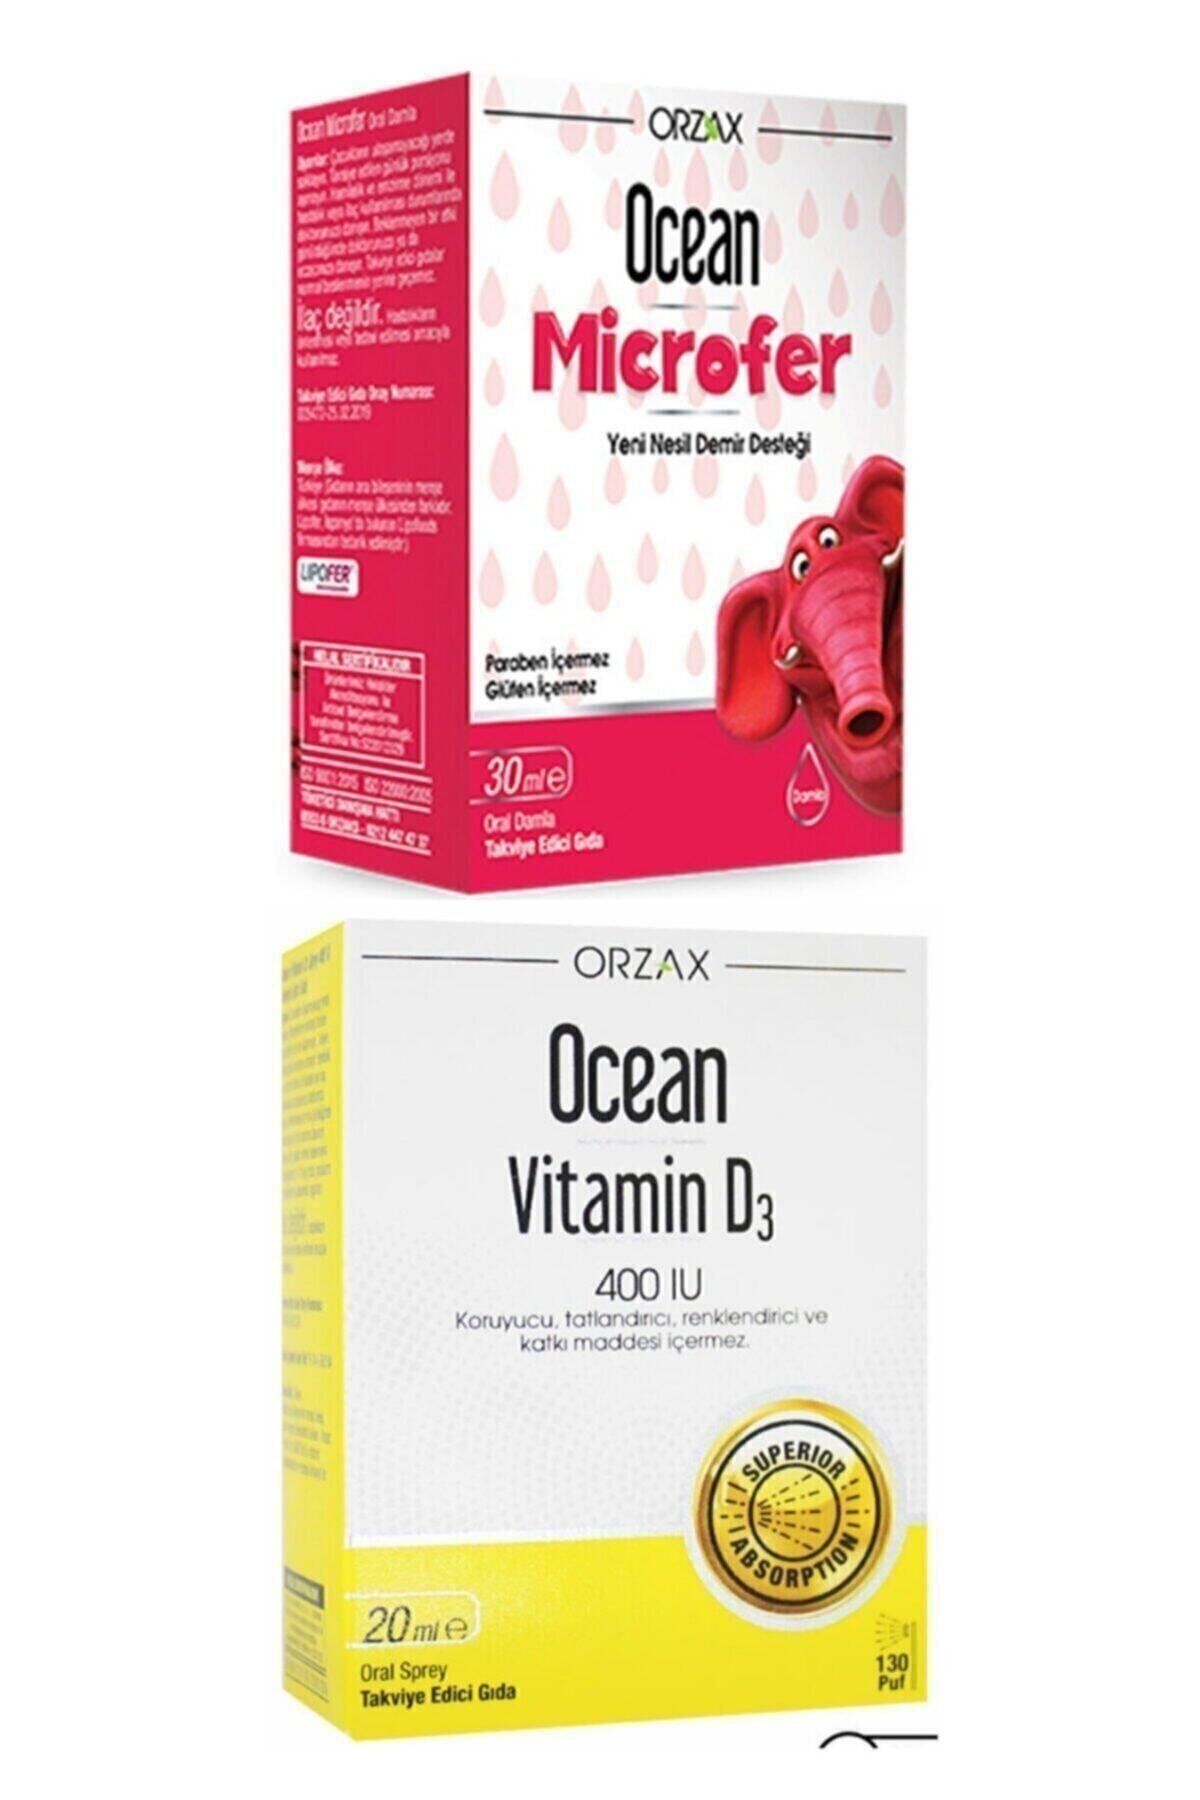 Ocaen Ocean Microfer Oral Damla 30 ml + Ocean Vitamin D3 400ıu Sprey 20 ml